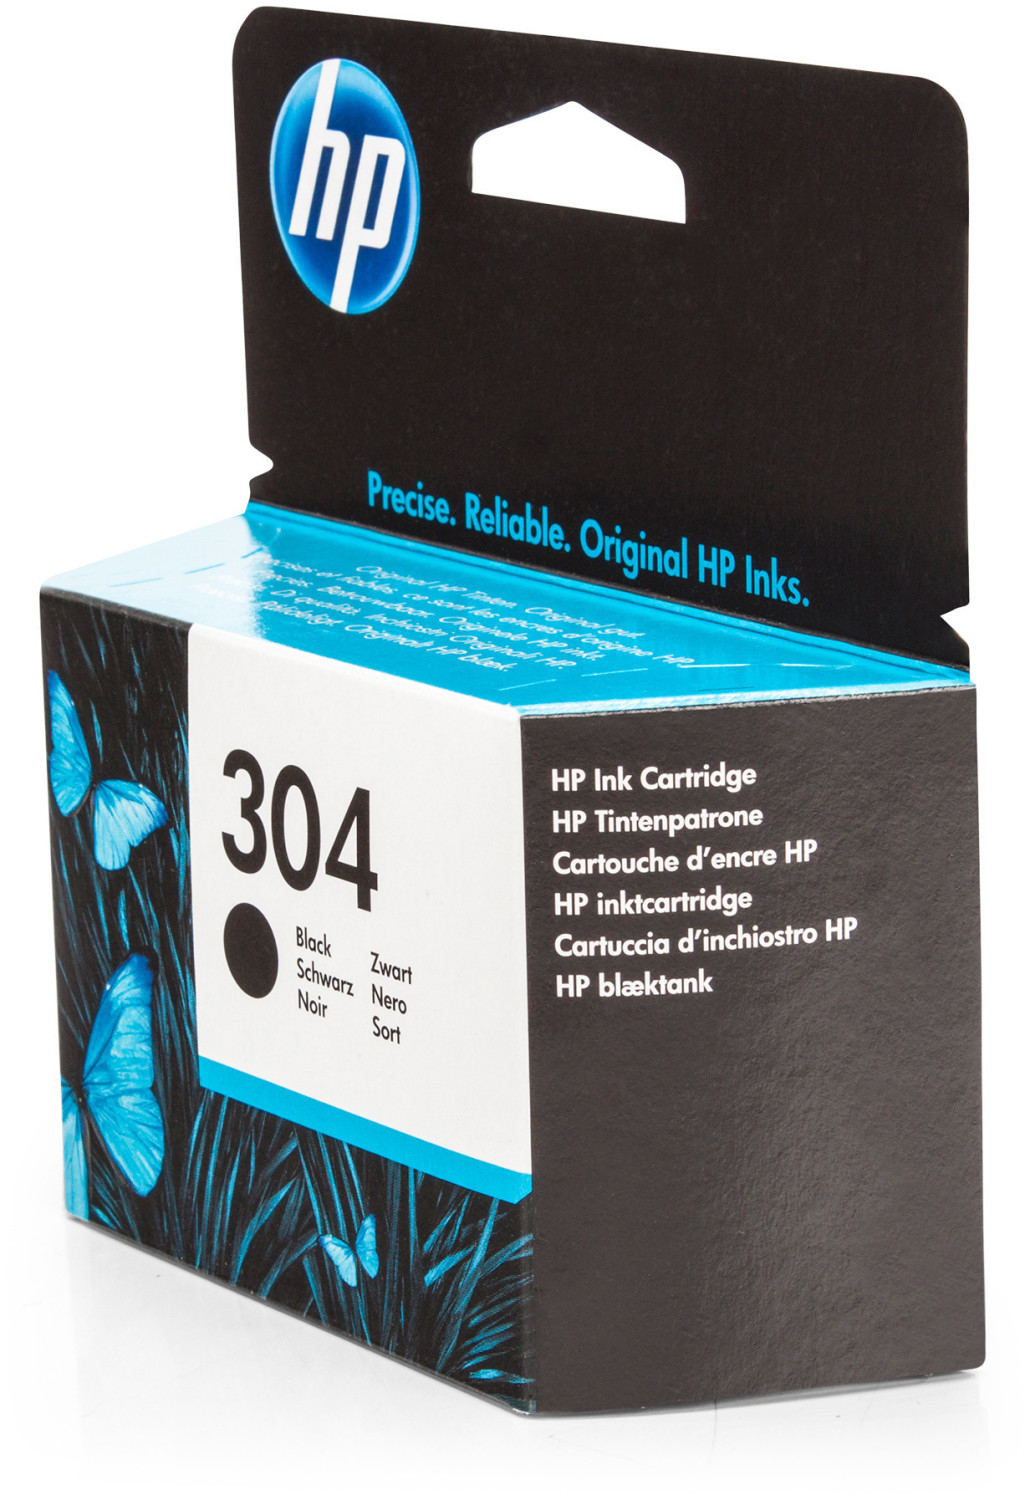 HP 304 Noir Couleur Cartouches encre HP - Pack - Tcsink